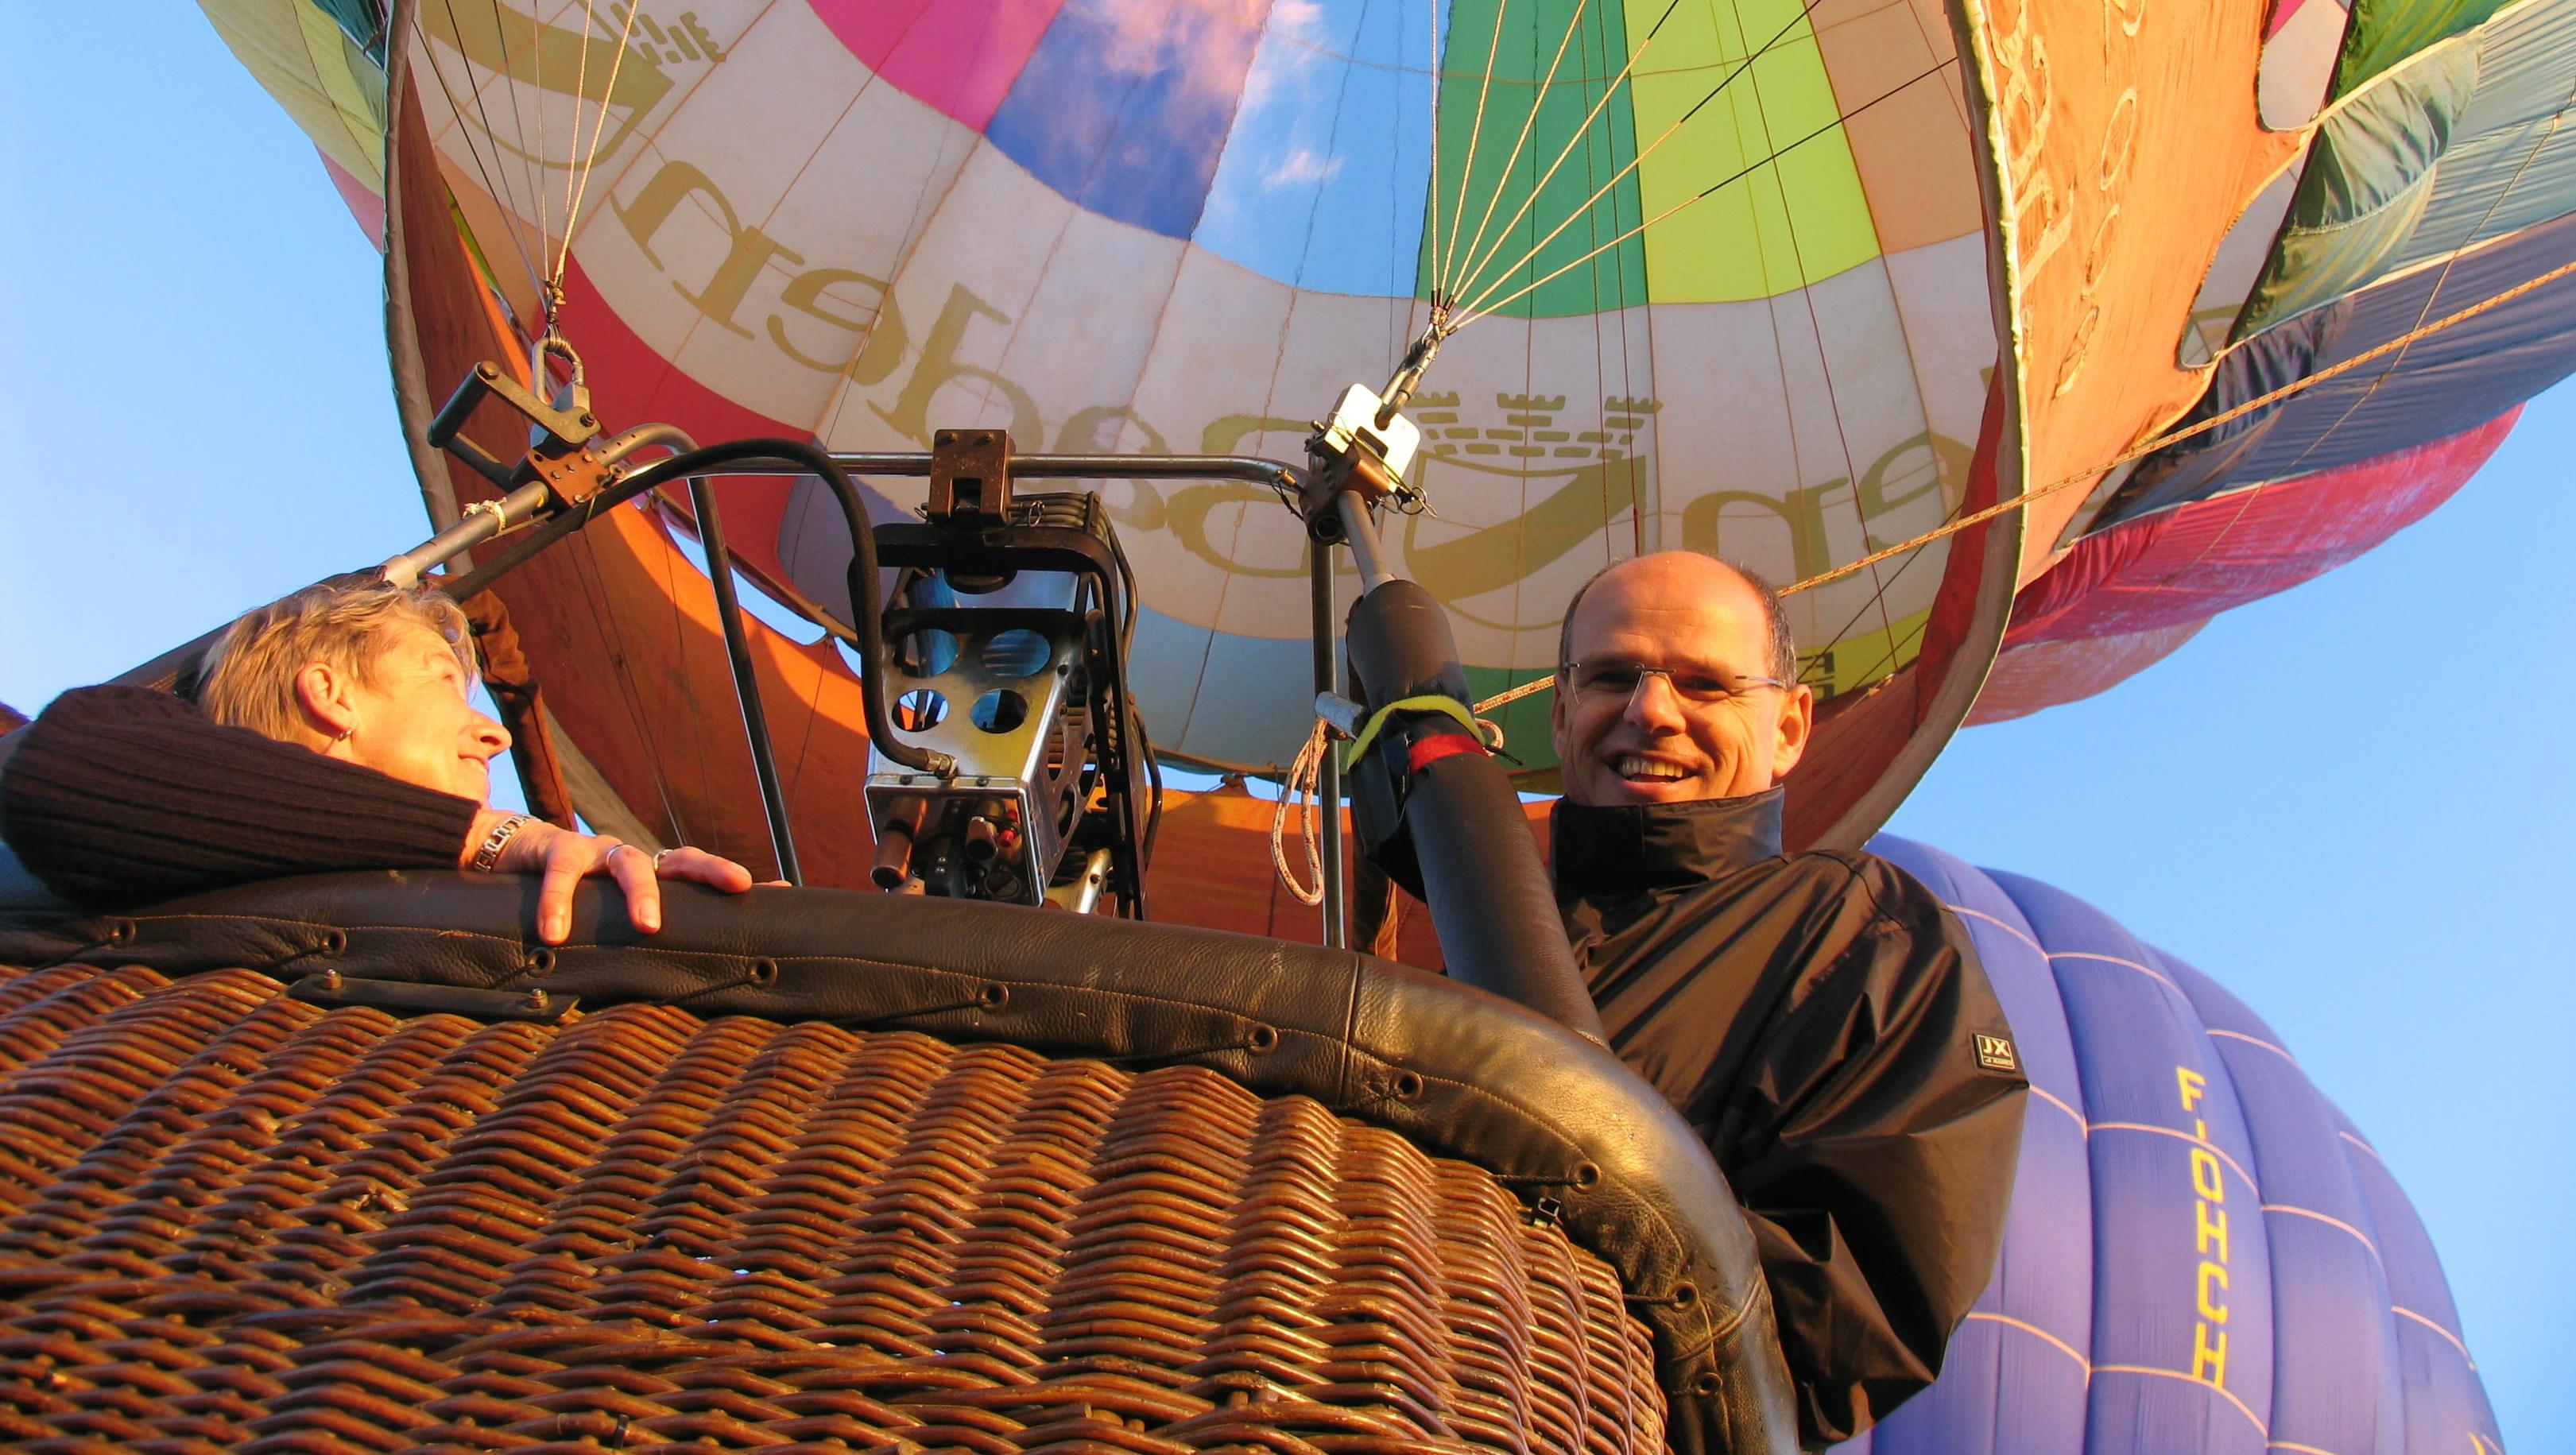 take a hot air balloon ride